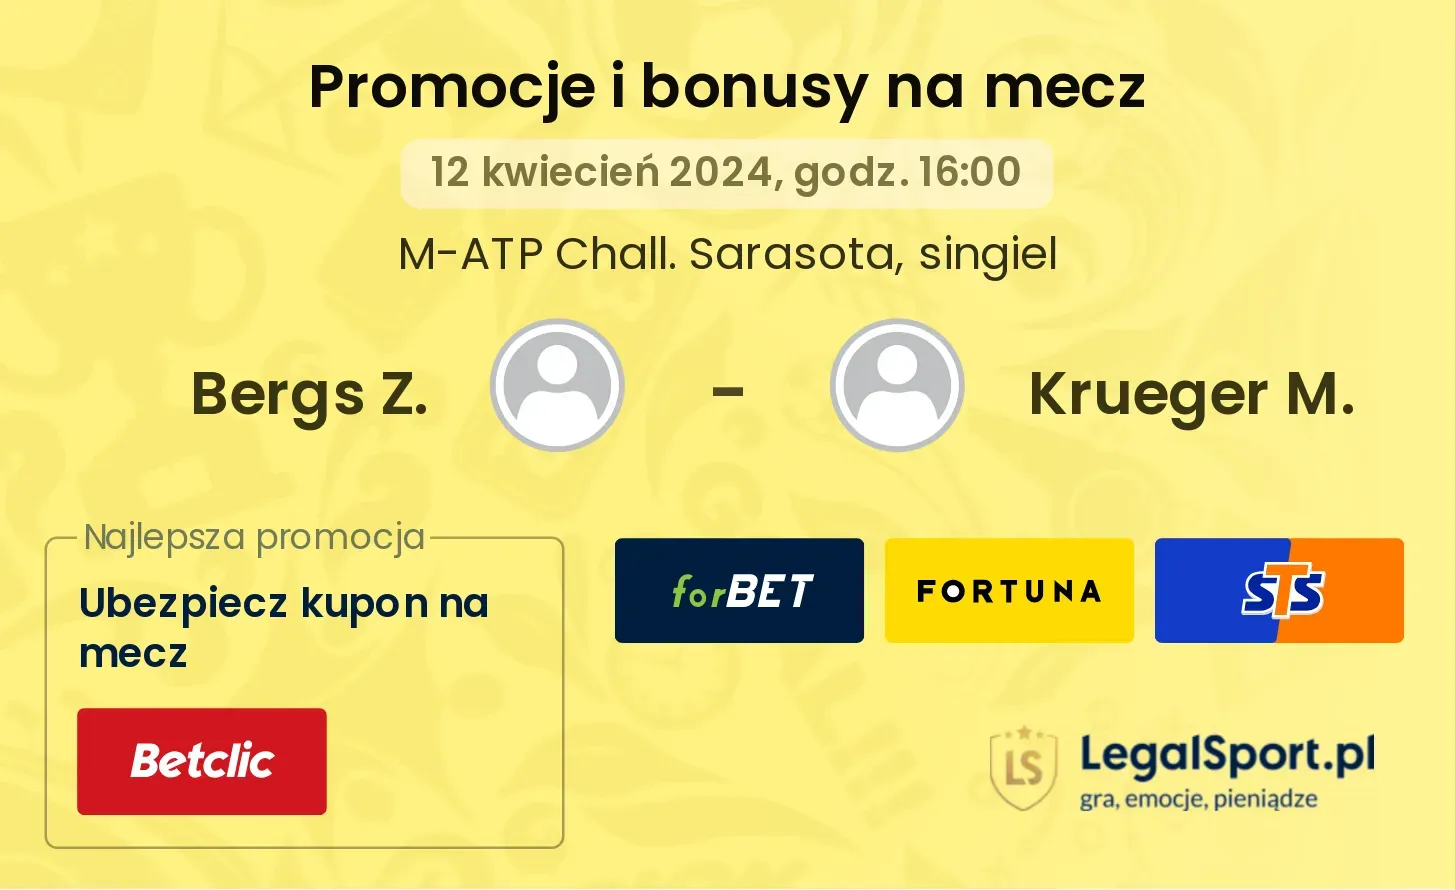 Bergs Z. - Krueger M. promocje bonusy na mecz